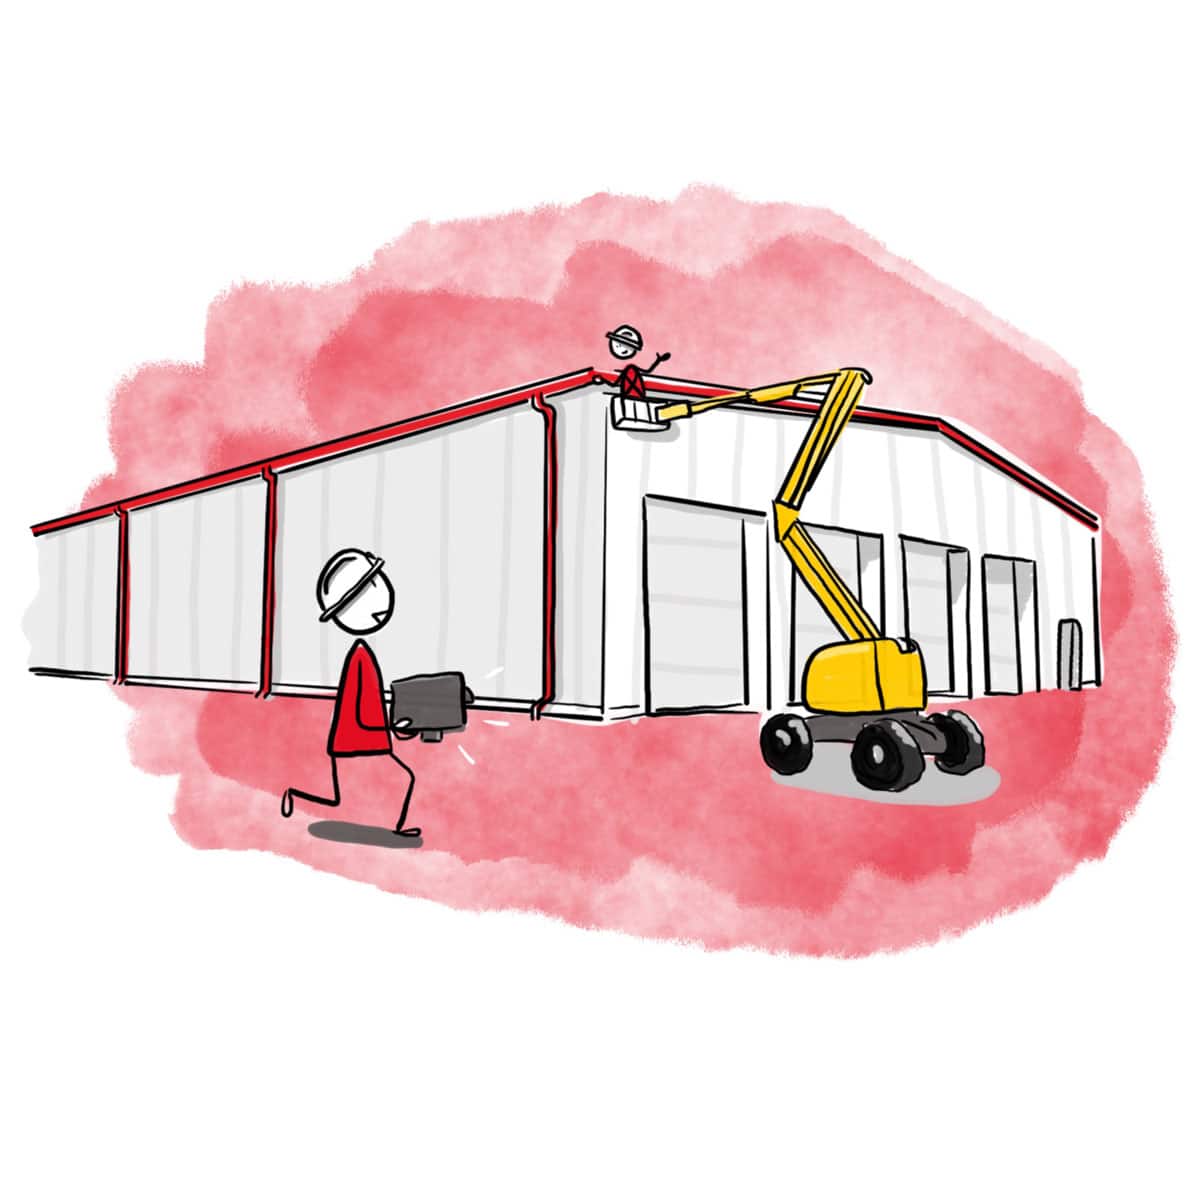 Illustration de l'équipe Vedrenne en chantier sur un bâtiment industriel